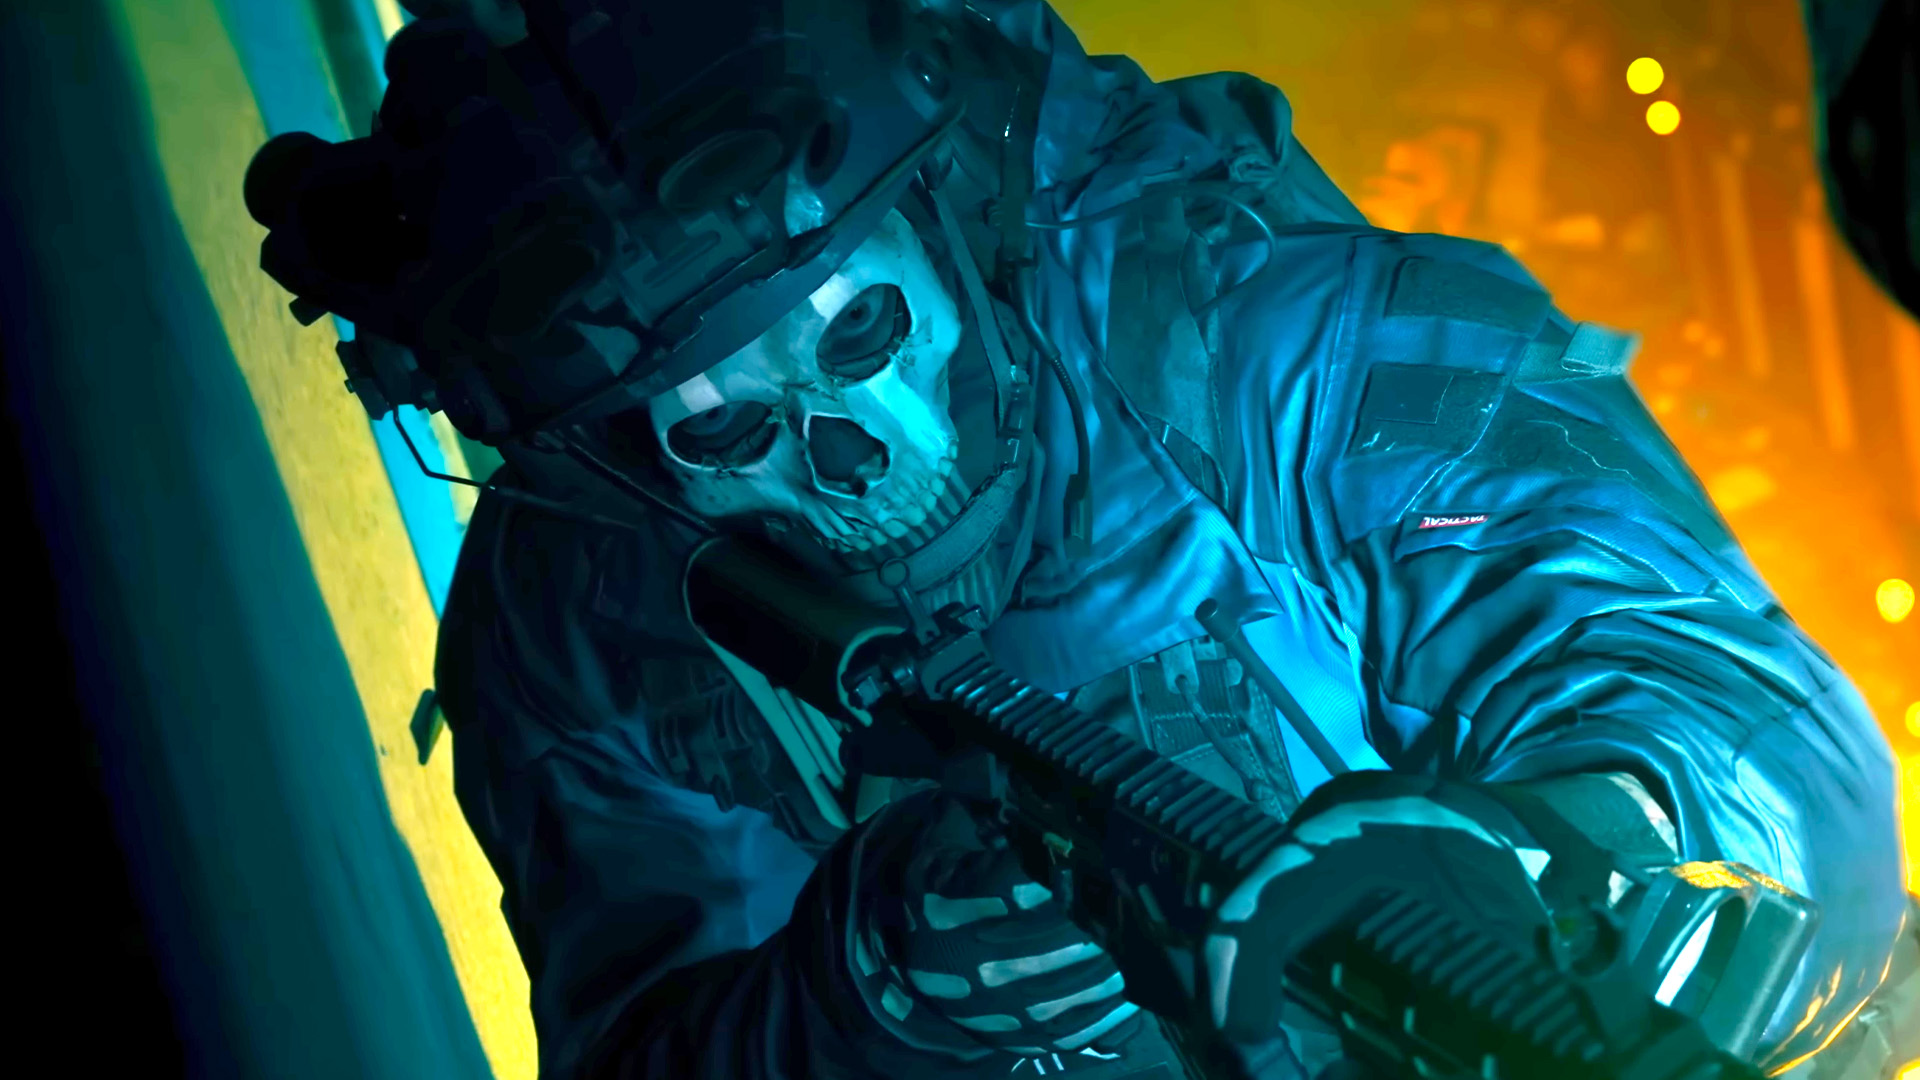 Modern Warfare 2 multiplayer beta: Codes, start time, platform